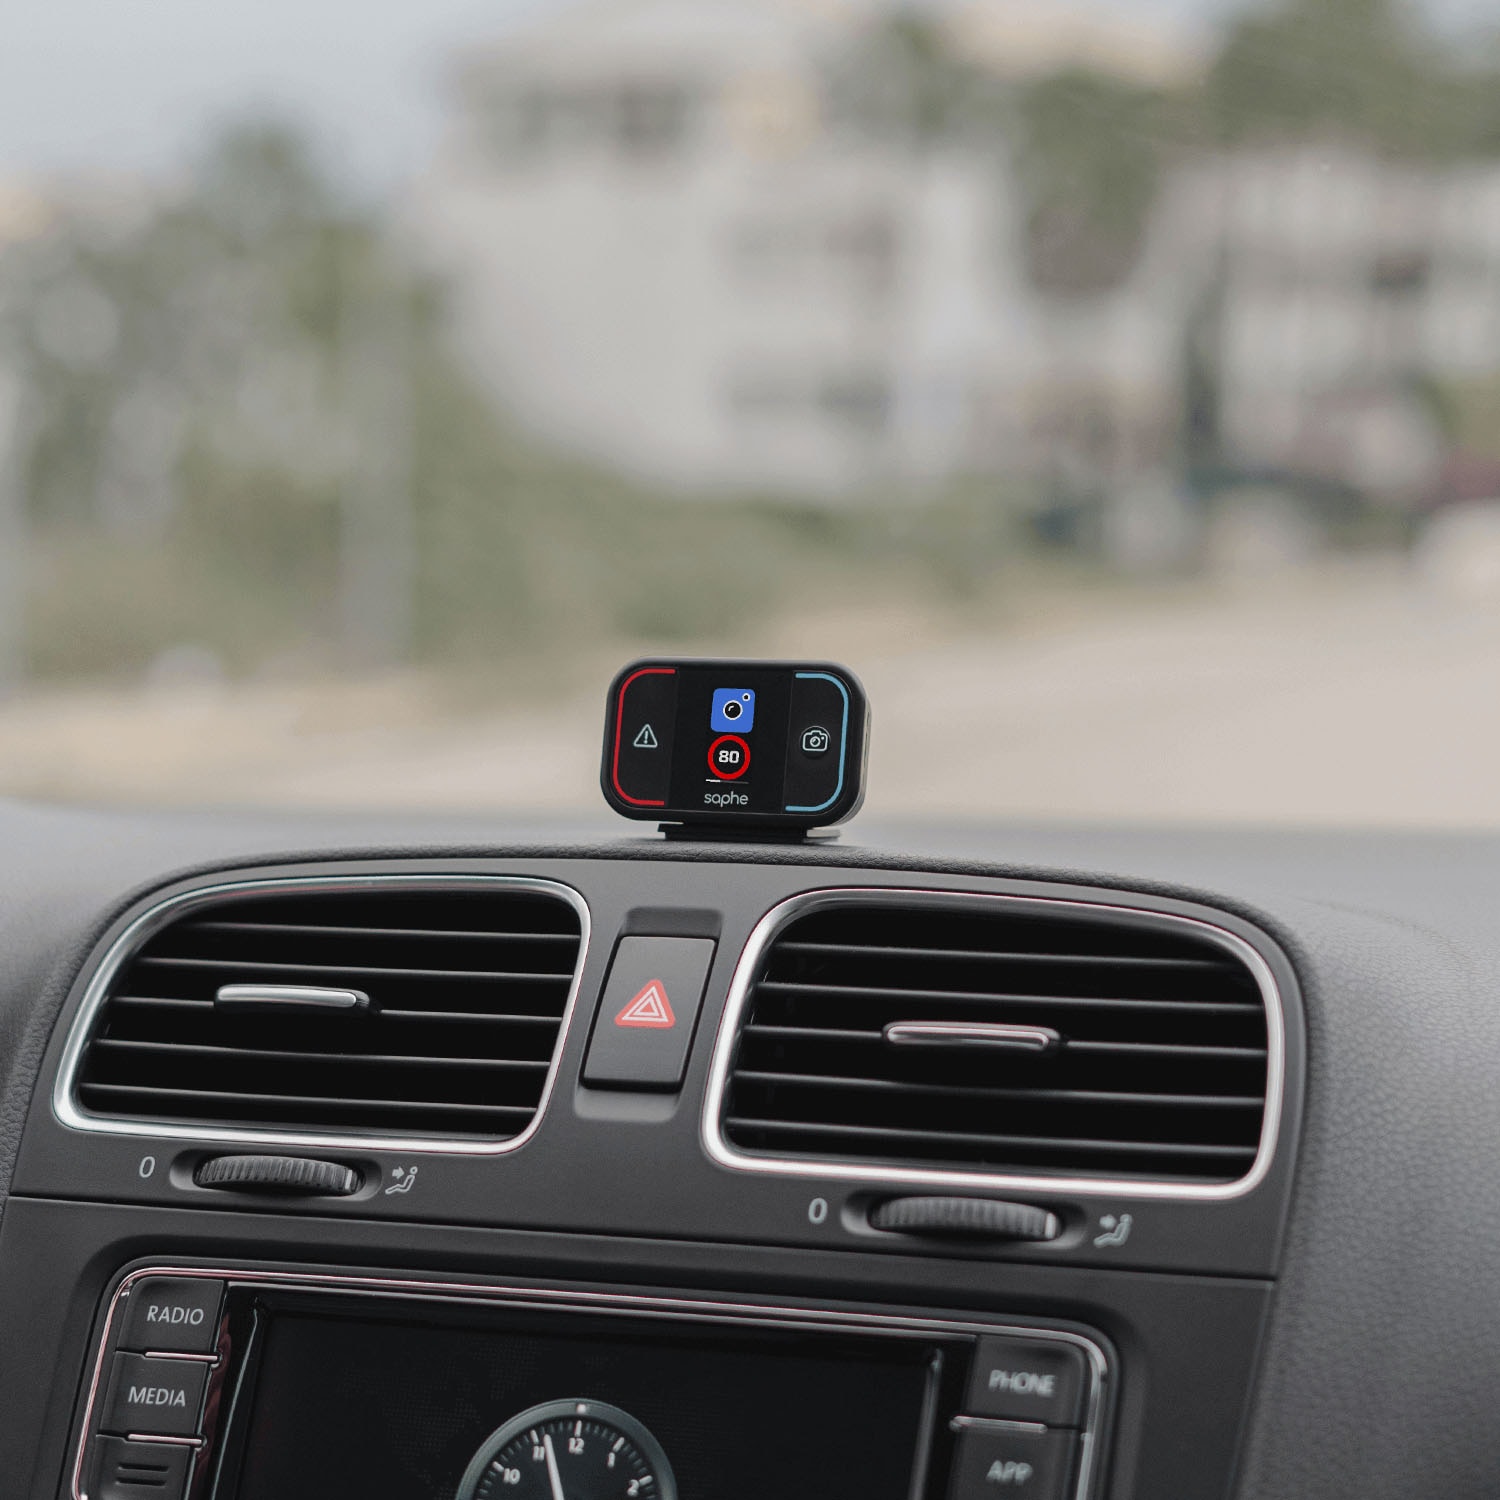 Saphe Verkehrsalarm »Saphe Drive Mini«, integriertes Display, Verbindung  mit Smartphone via Bluetooth online kaufen, mit 3 Jahren XXL Garantie